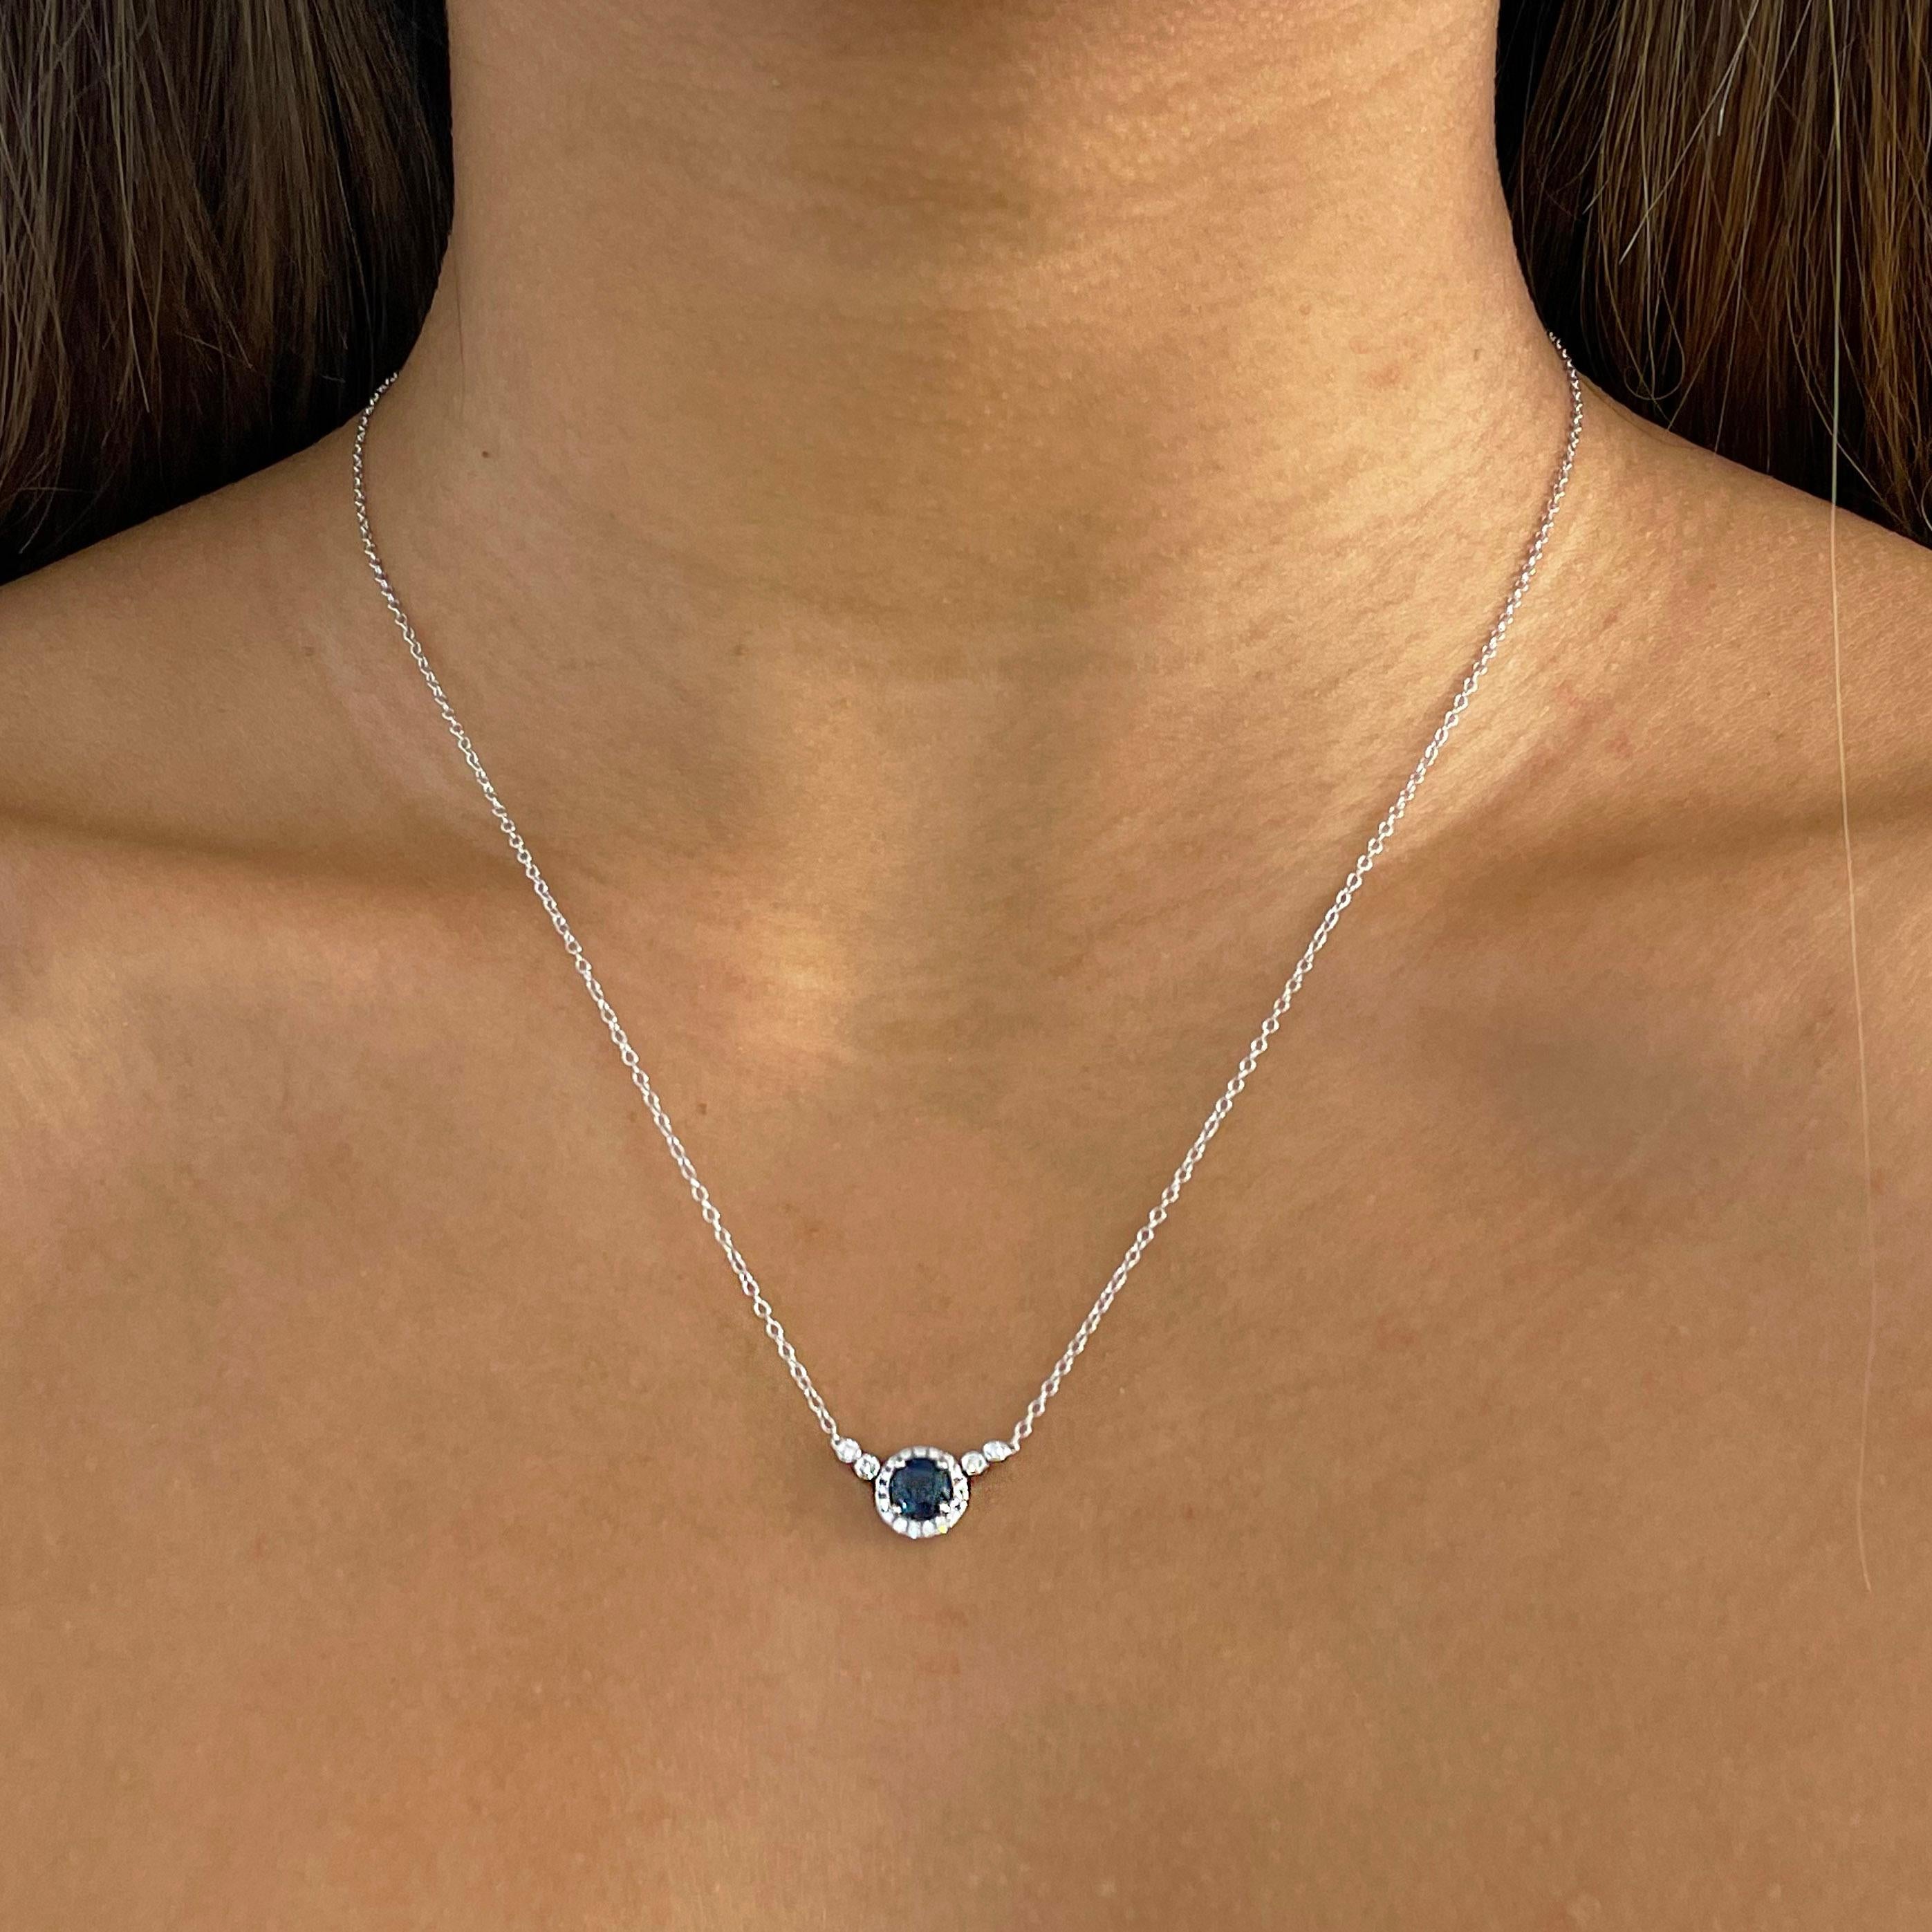 black sapphire pendant necklace